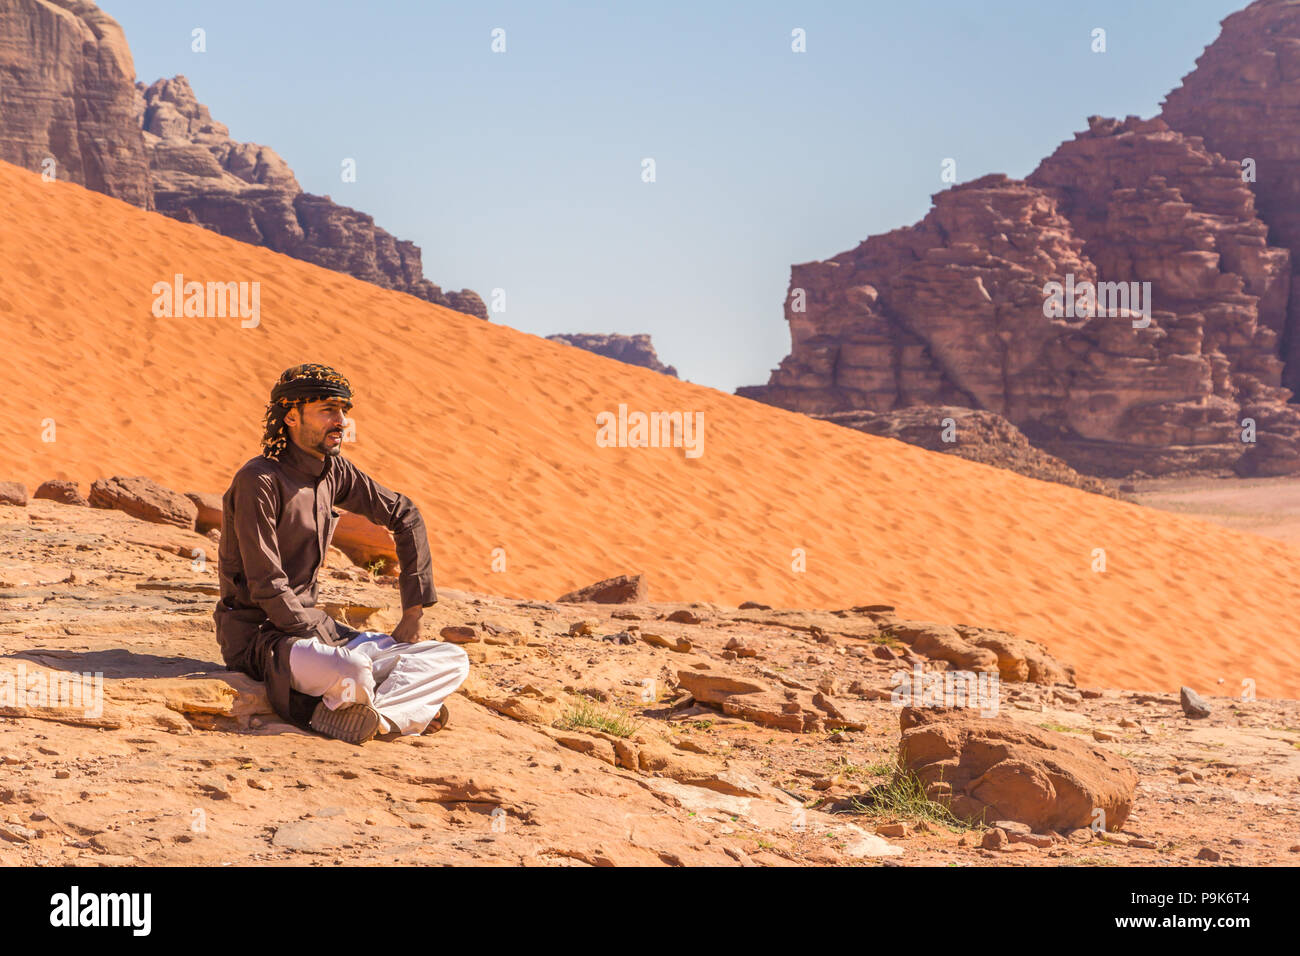 Wadi Rum, Jordania - Abril 30, 2016: hombre beduino está descansando sobre una roca en el desierto de Wadi Rum en Jordania Foto de stock